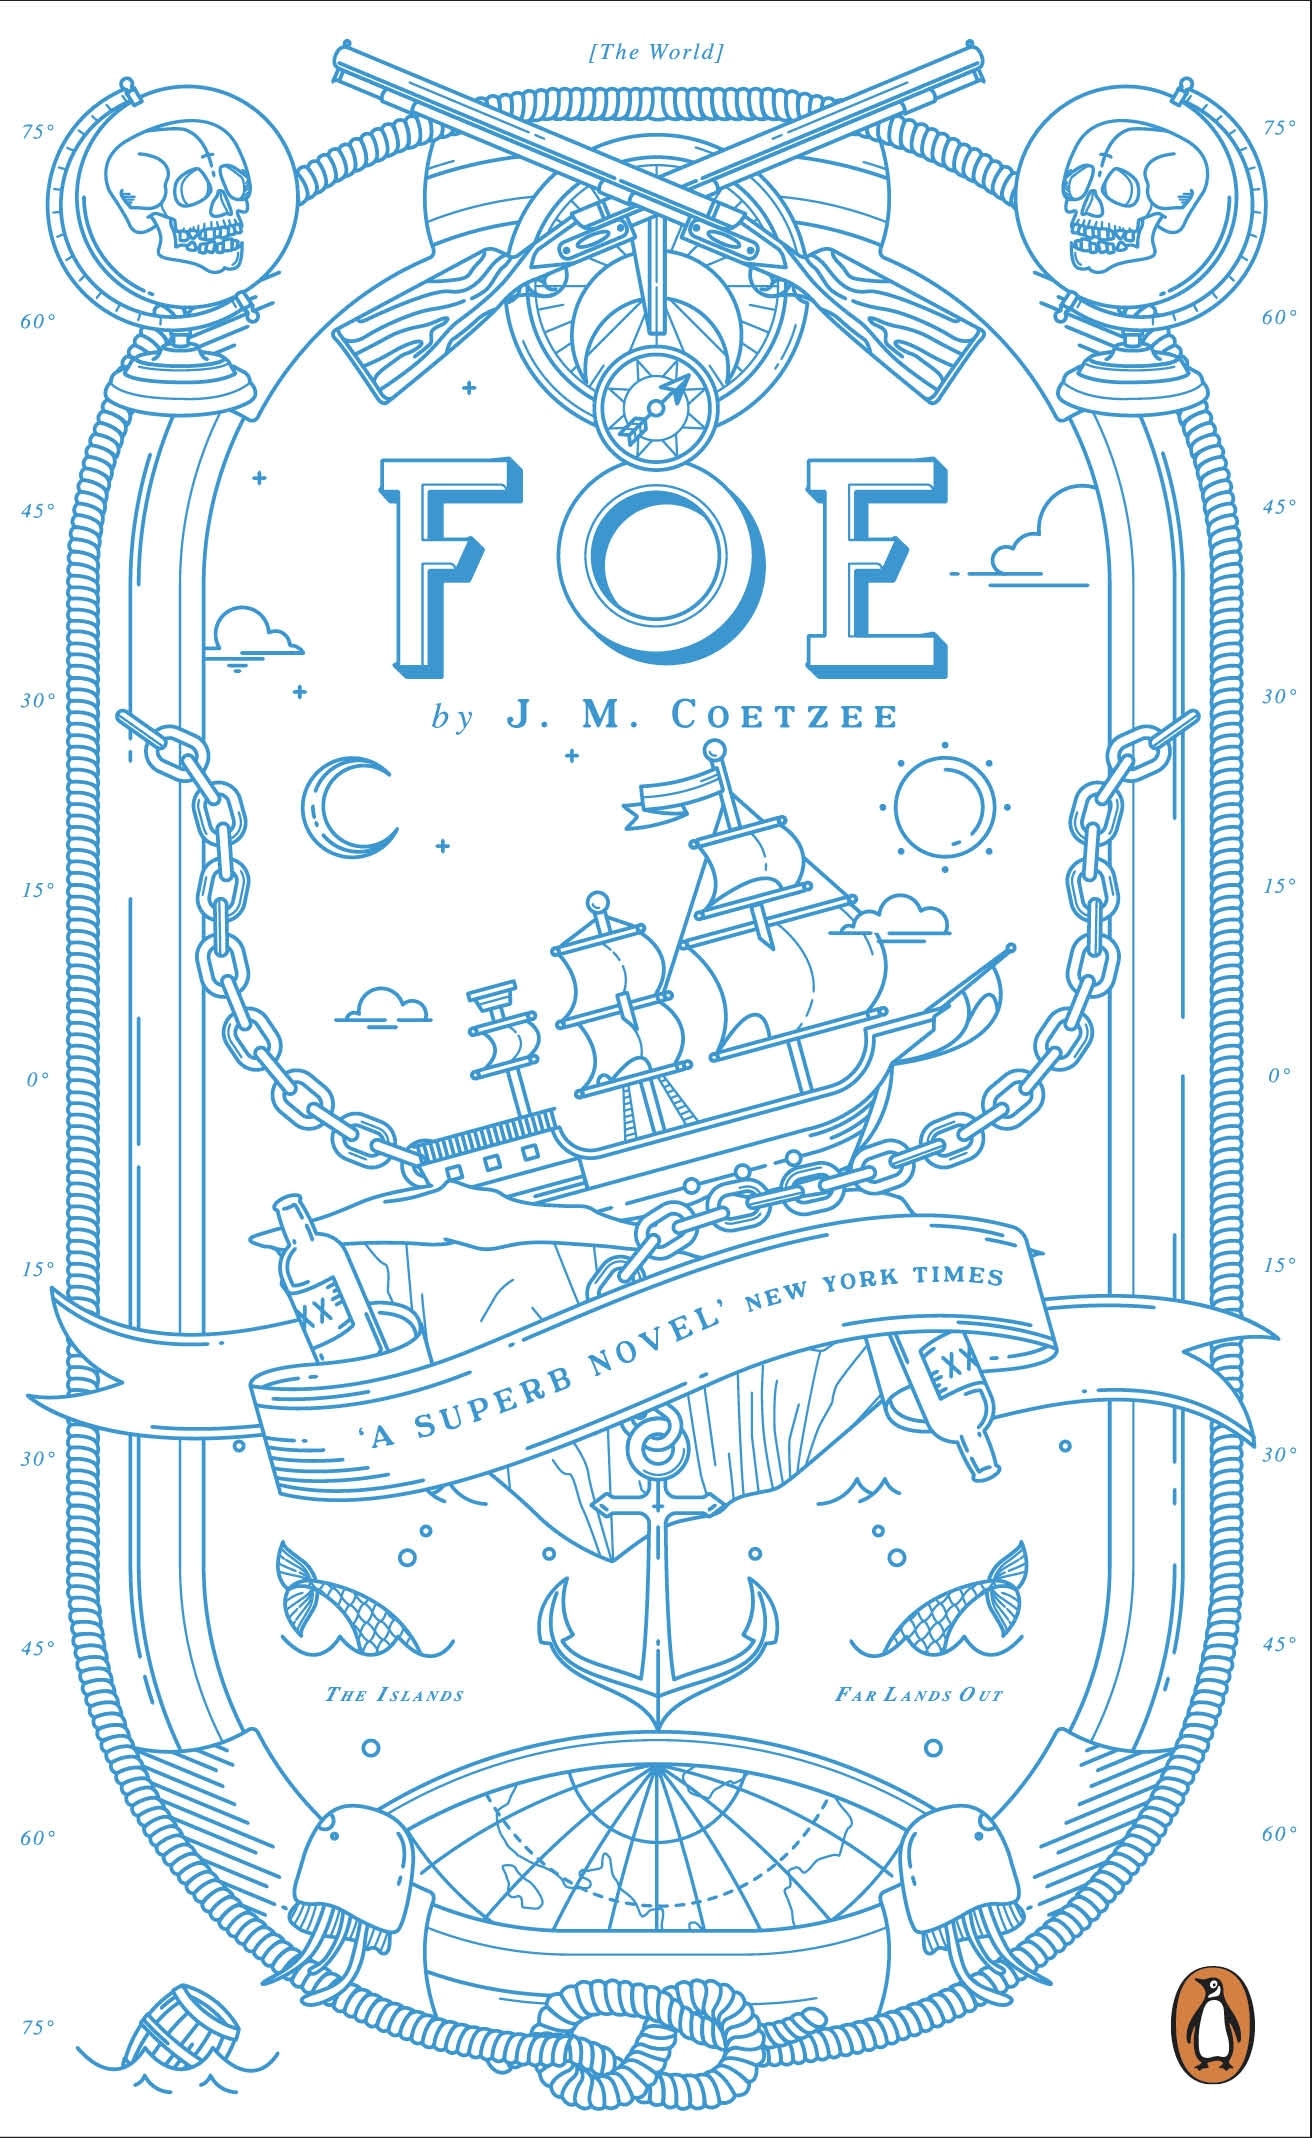 Book “Foe” by J M Coetzee — August 6, 2015